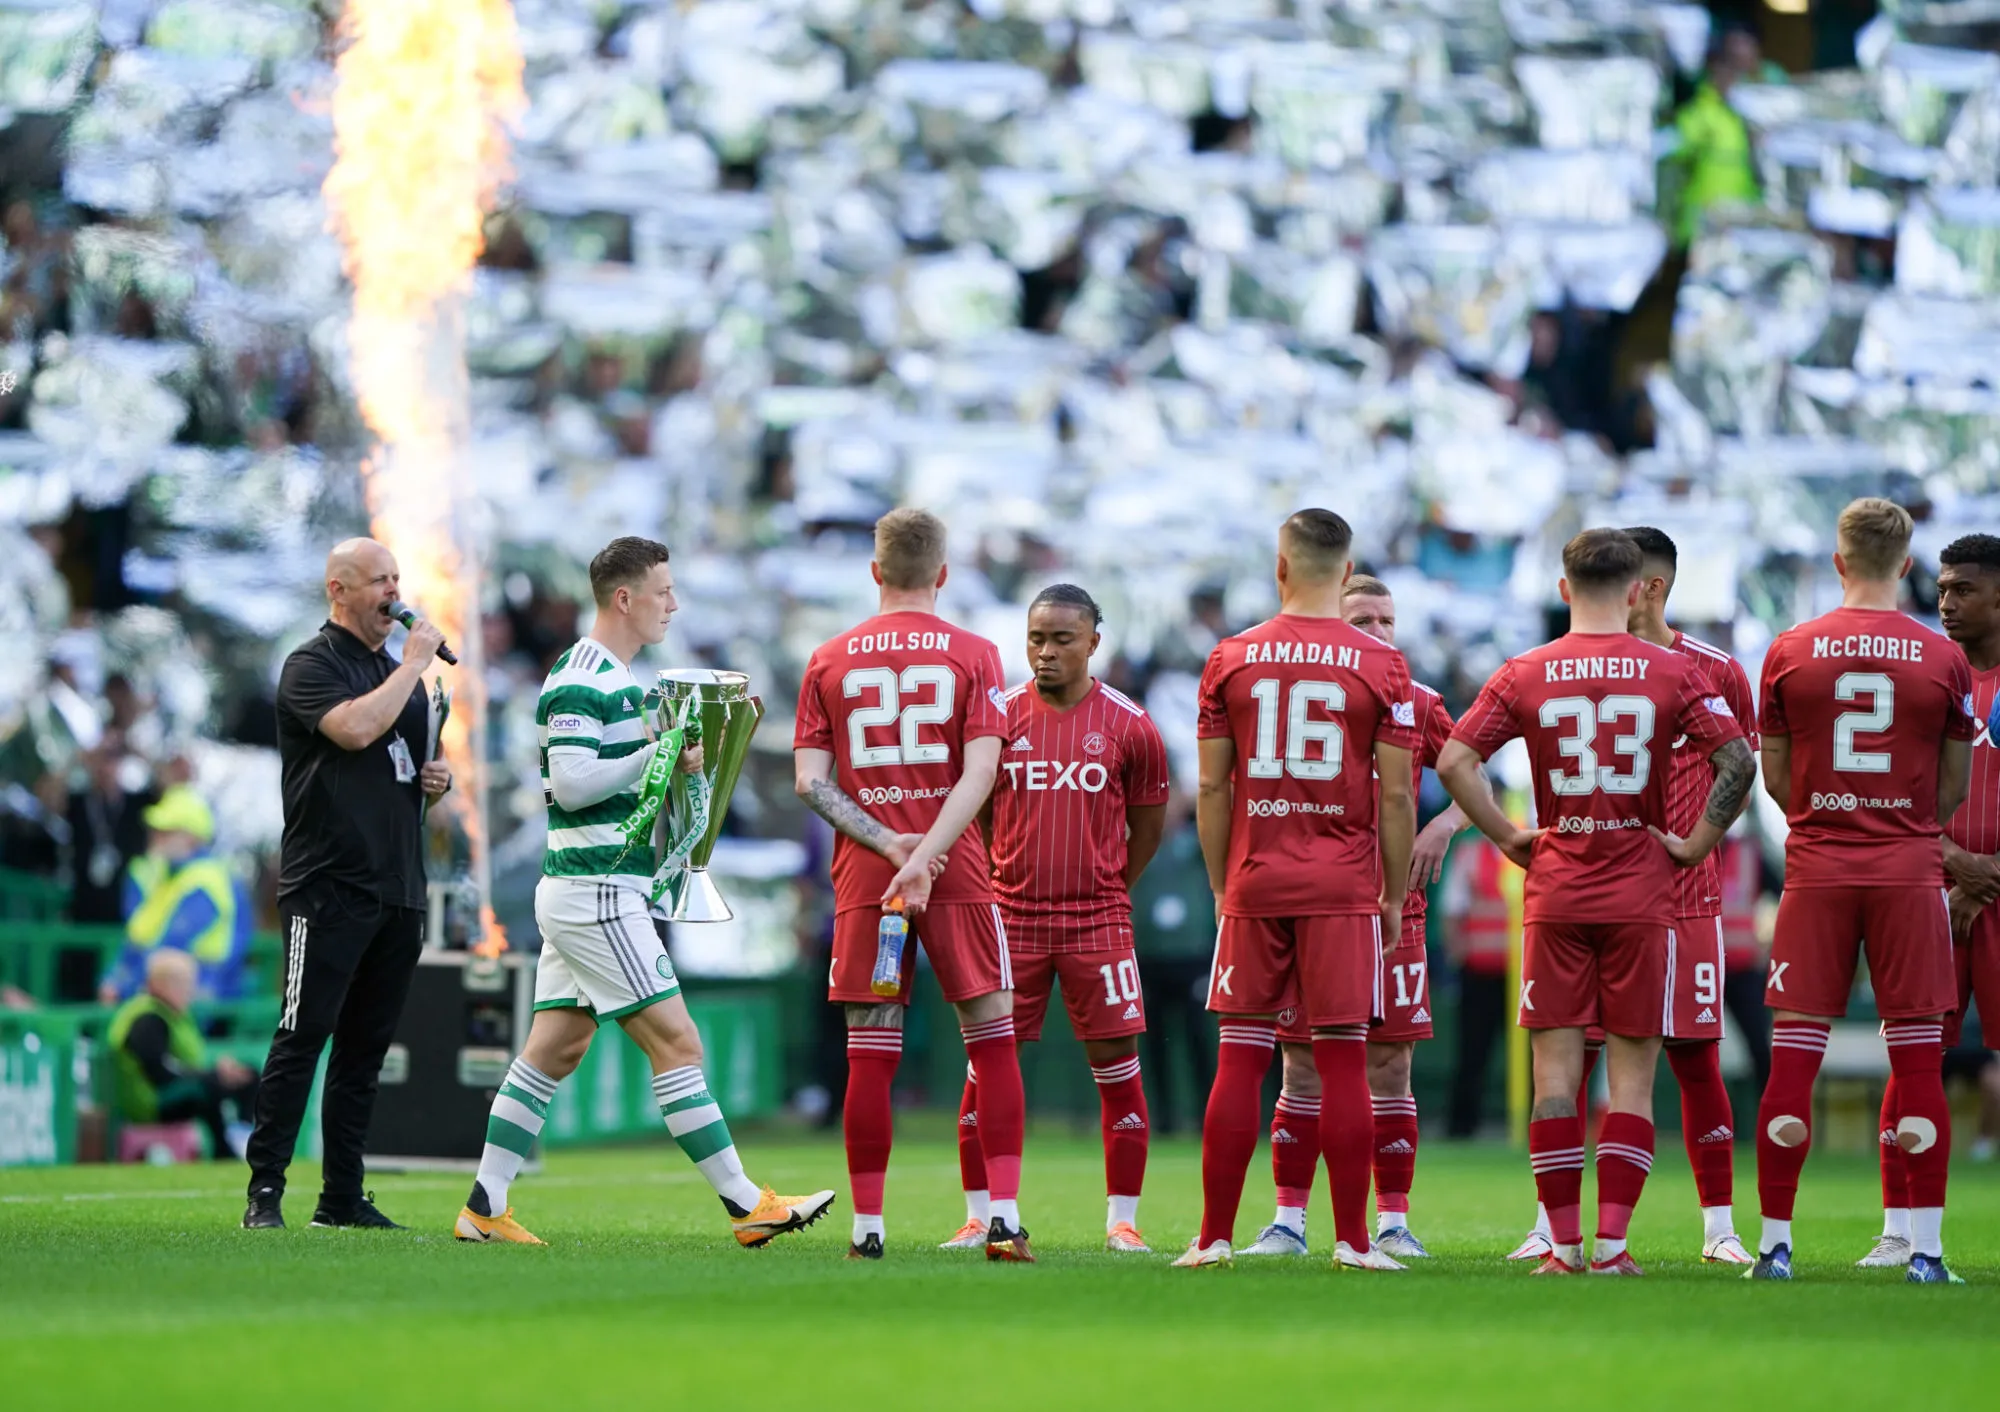 Le fabuleux tifo des fans du Celtic pour la reprise de la saison en Écosse